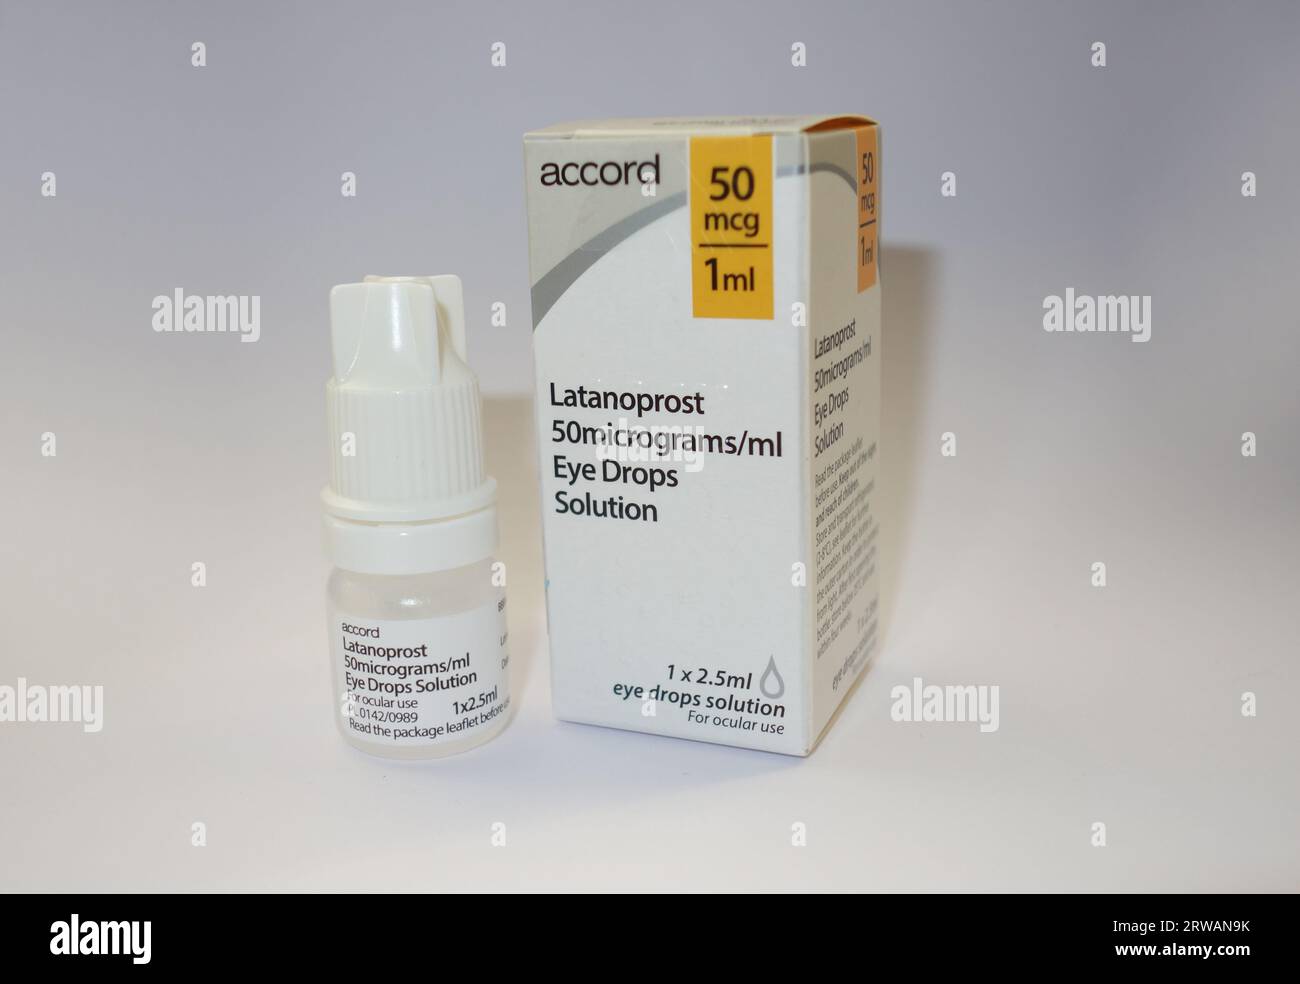 Box & Flasche Latanoprost 50 mg/ml + 1 mg/ml Augentropfen von Accord zur Behandlung von Glaukom und okulärer Hypertonie. Stockfoto